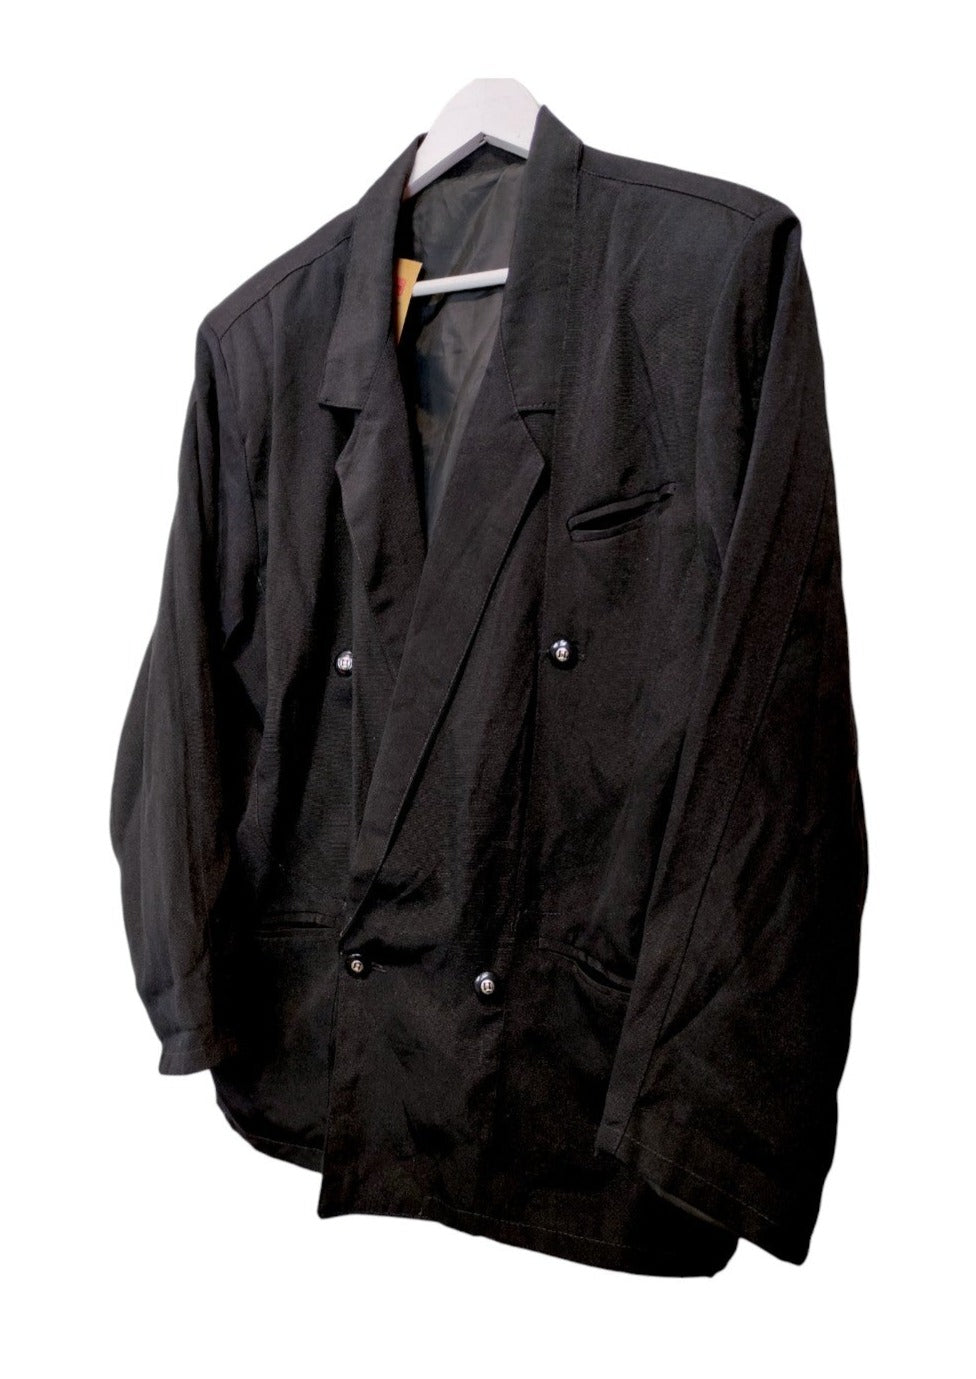 80's Ανδρικό Σακάκι σε Μαύρο Χρώμα (Medium)